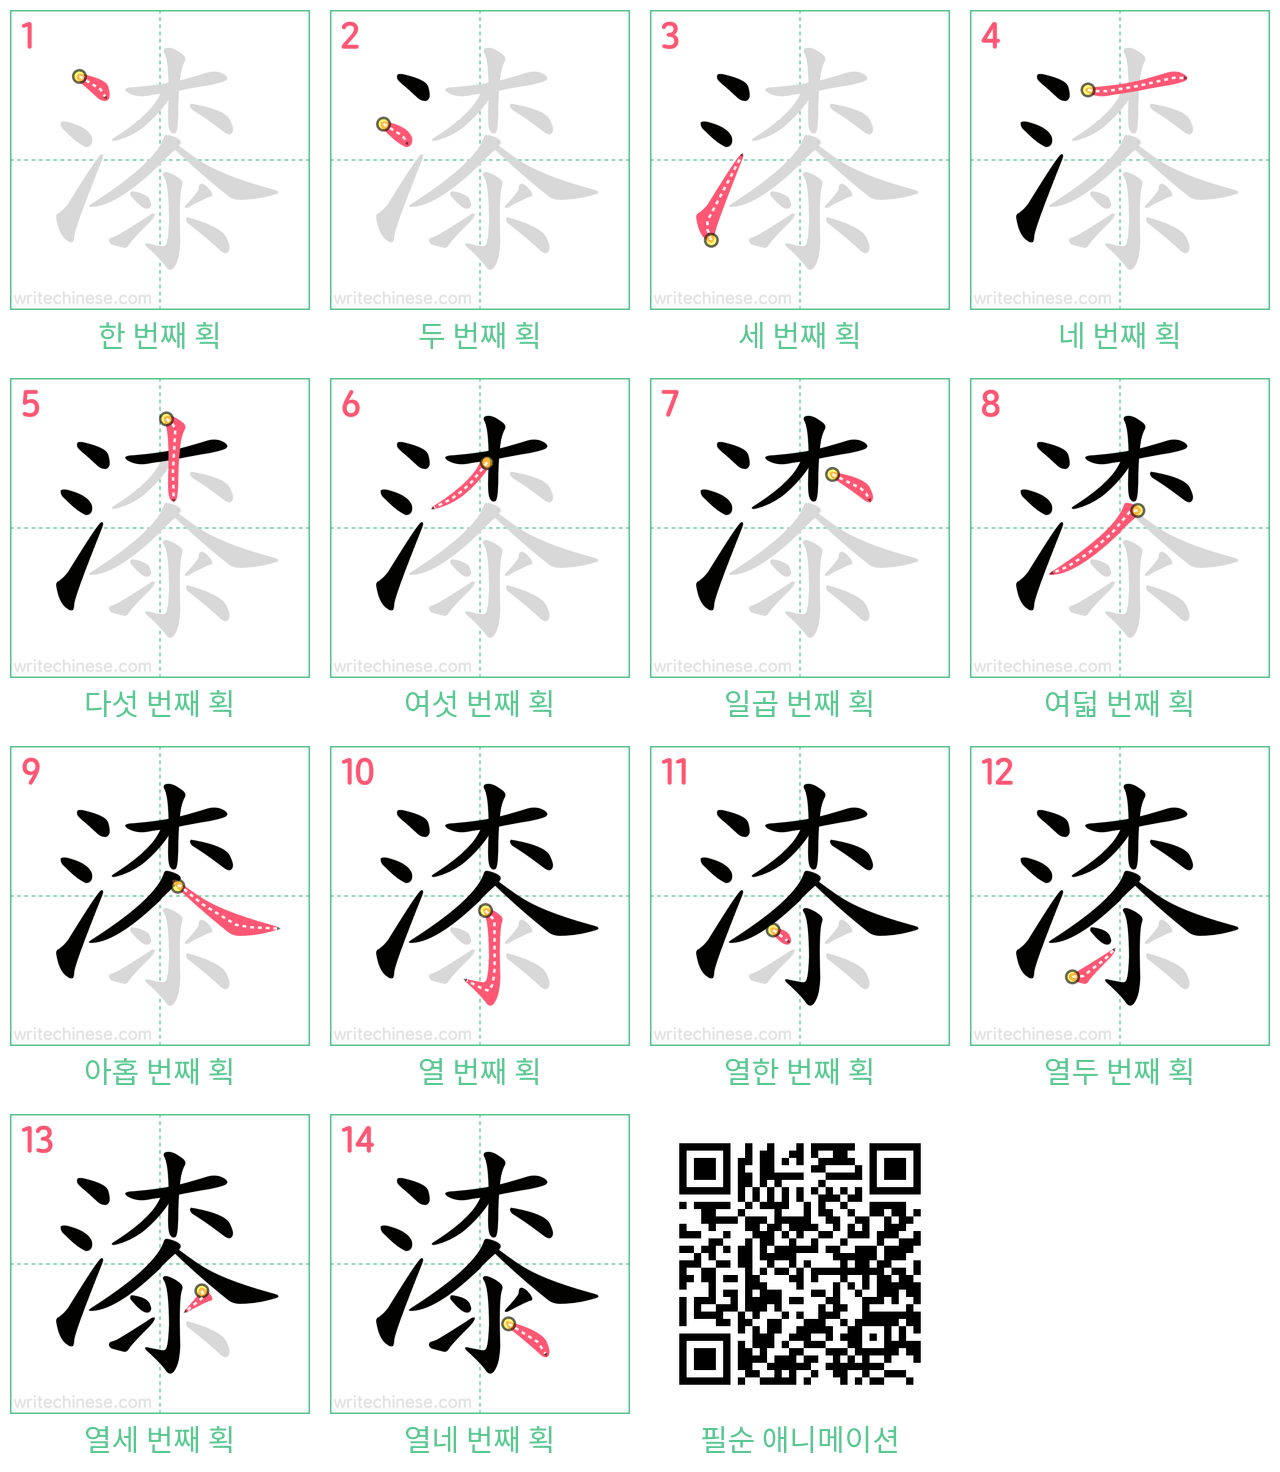 漆 step-by-step stroke order diagrams